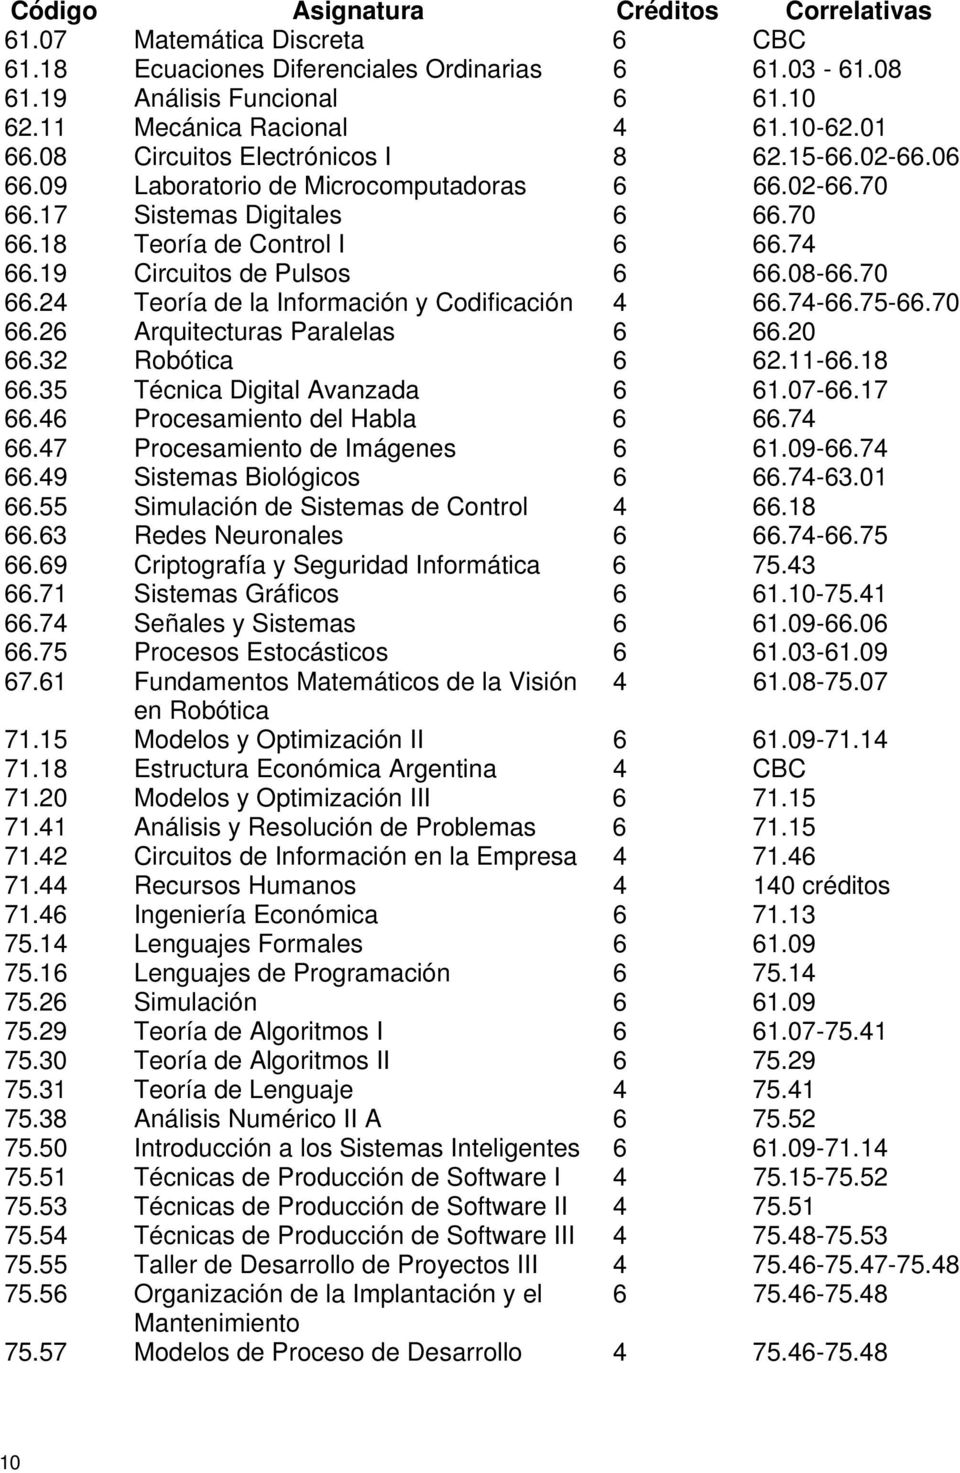 19 Circuitos de Pulsos 6 66.08-66.70 66.24 Teoría de la Información y Codificación 4 66.74-66.75-66.70 66.26 Arquitecturas Paralelas 6 66.20 66.32 Robótica 6 62.11-66.18 66.